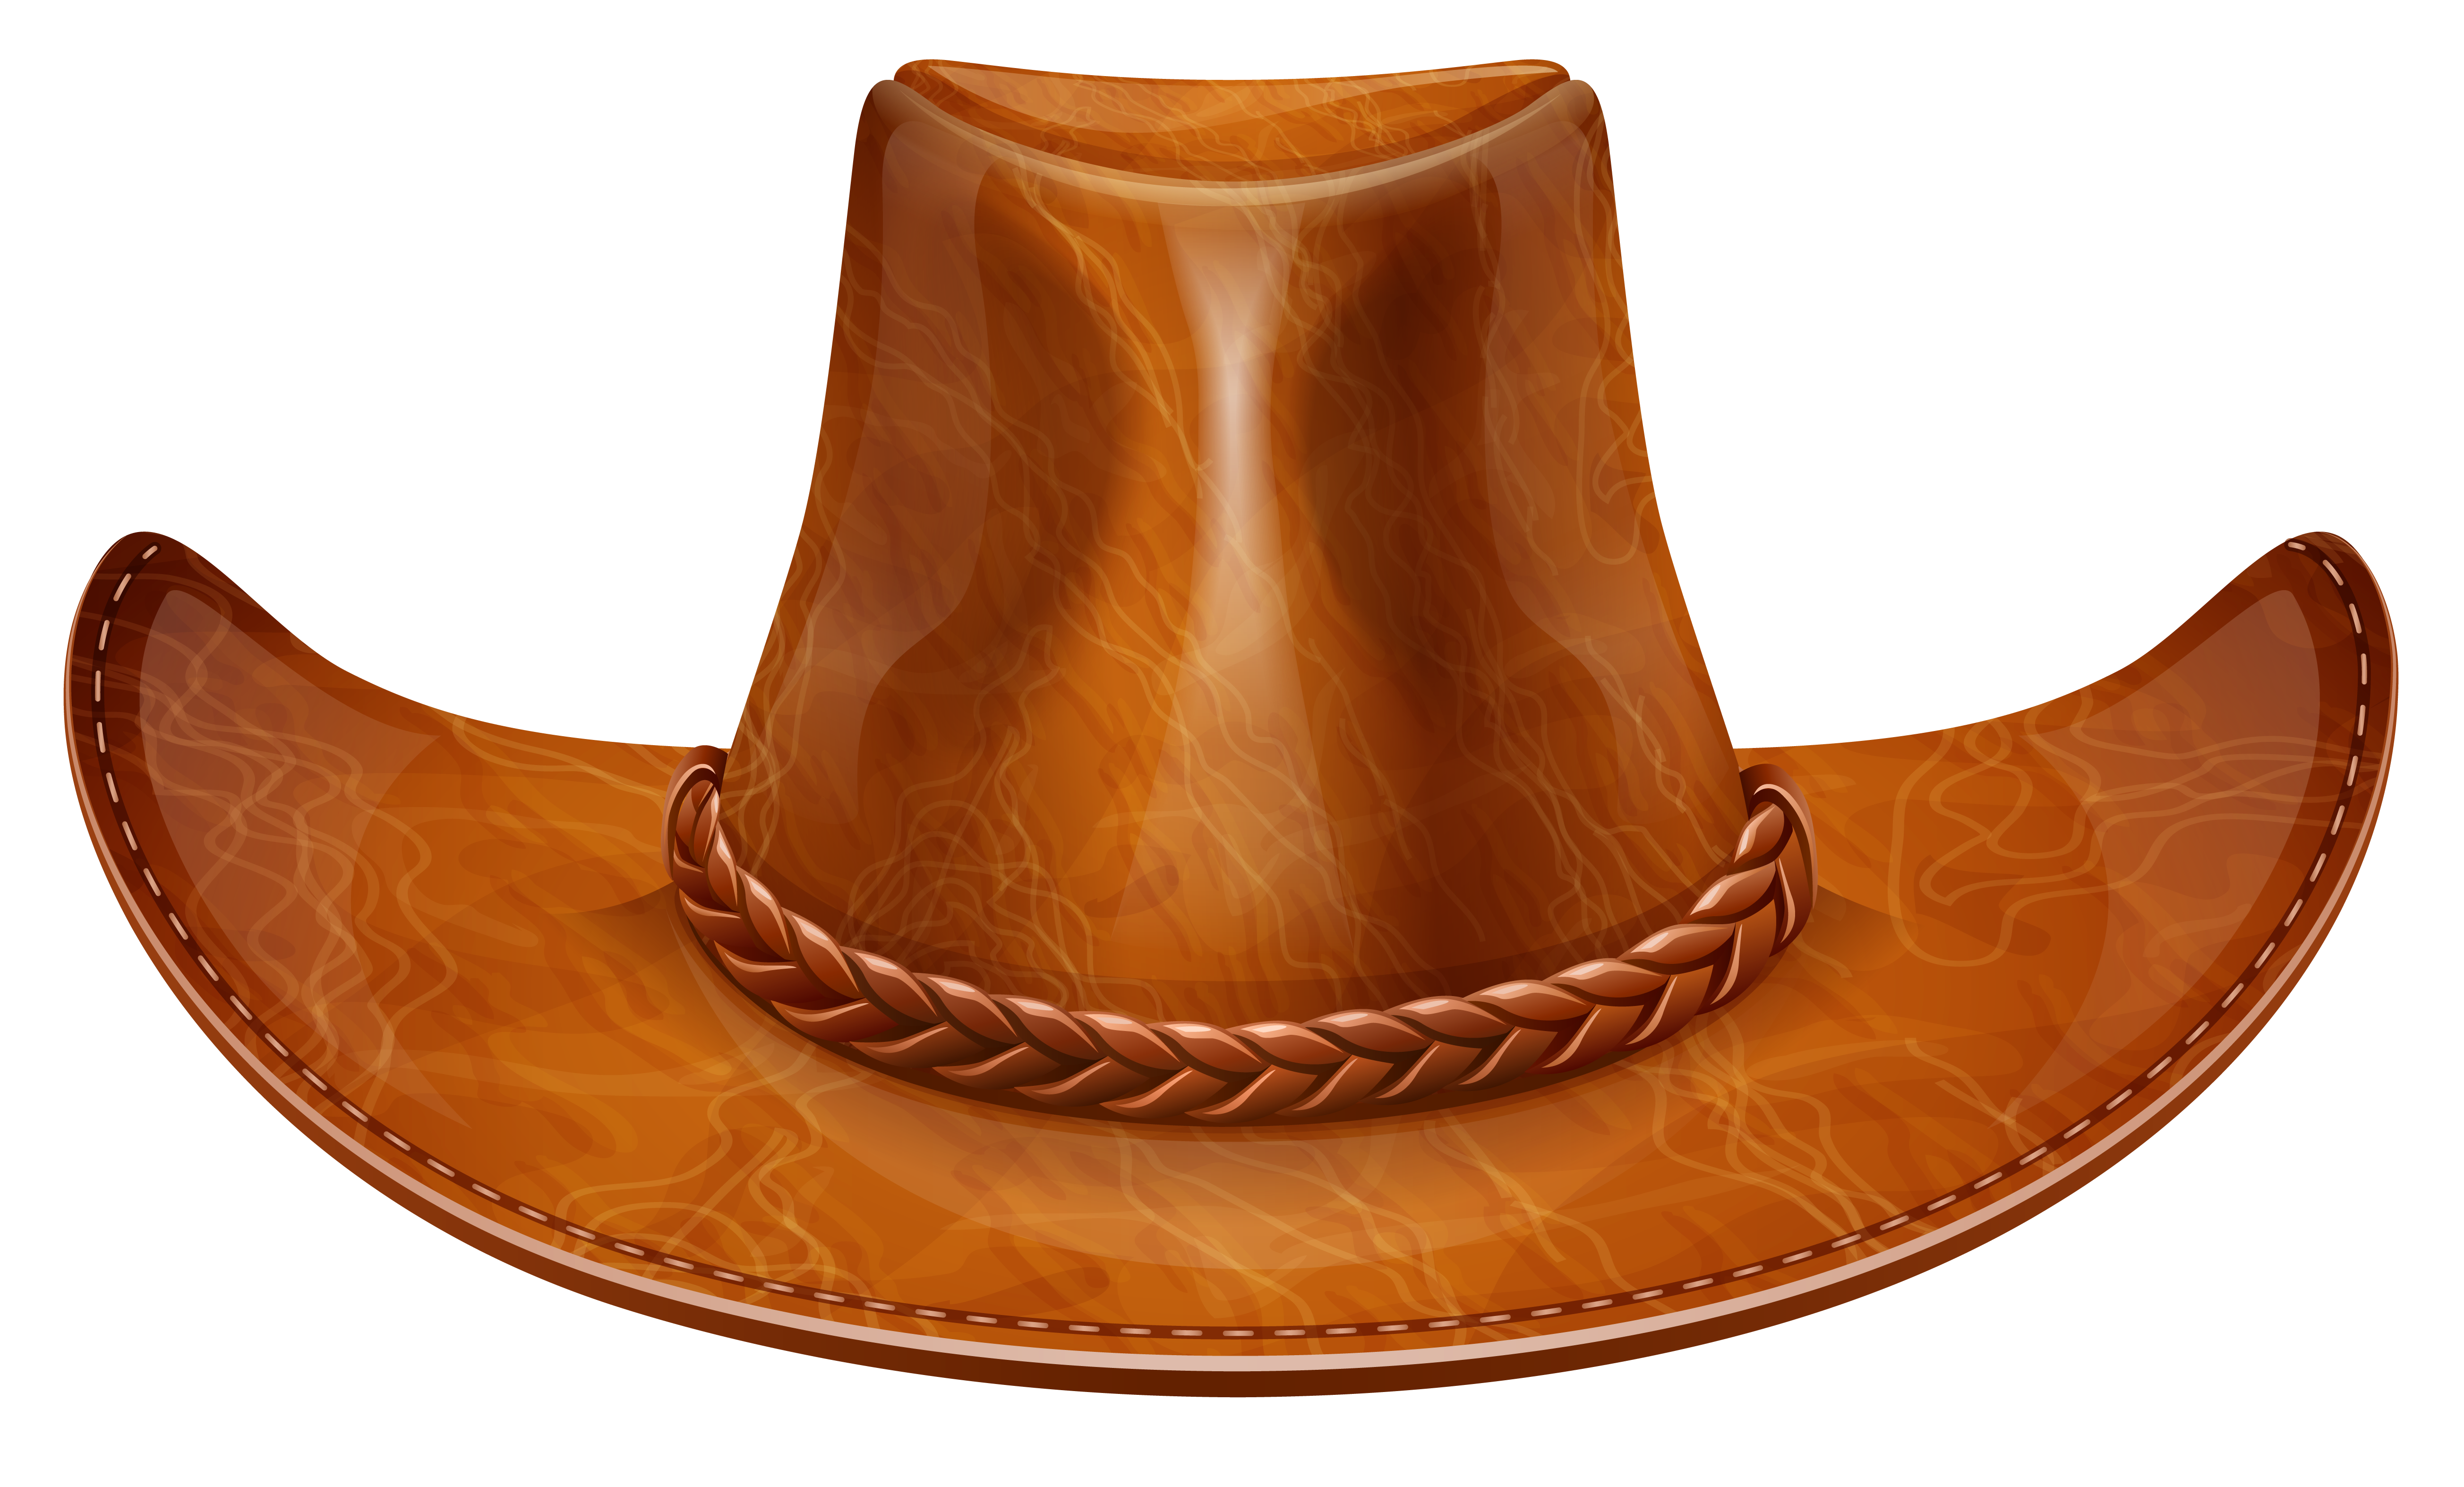 cowboy hat clipart images - photo #48